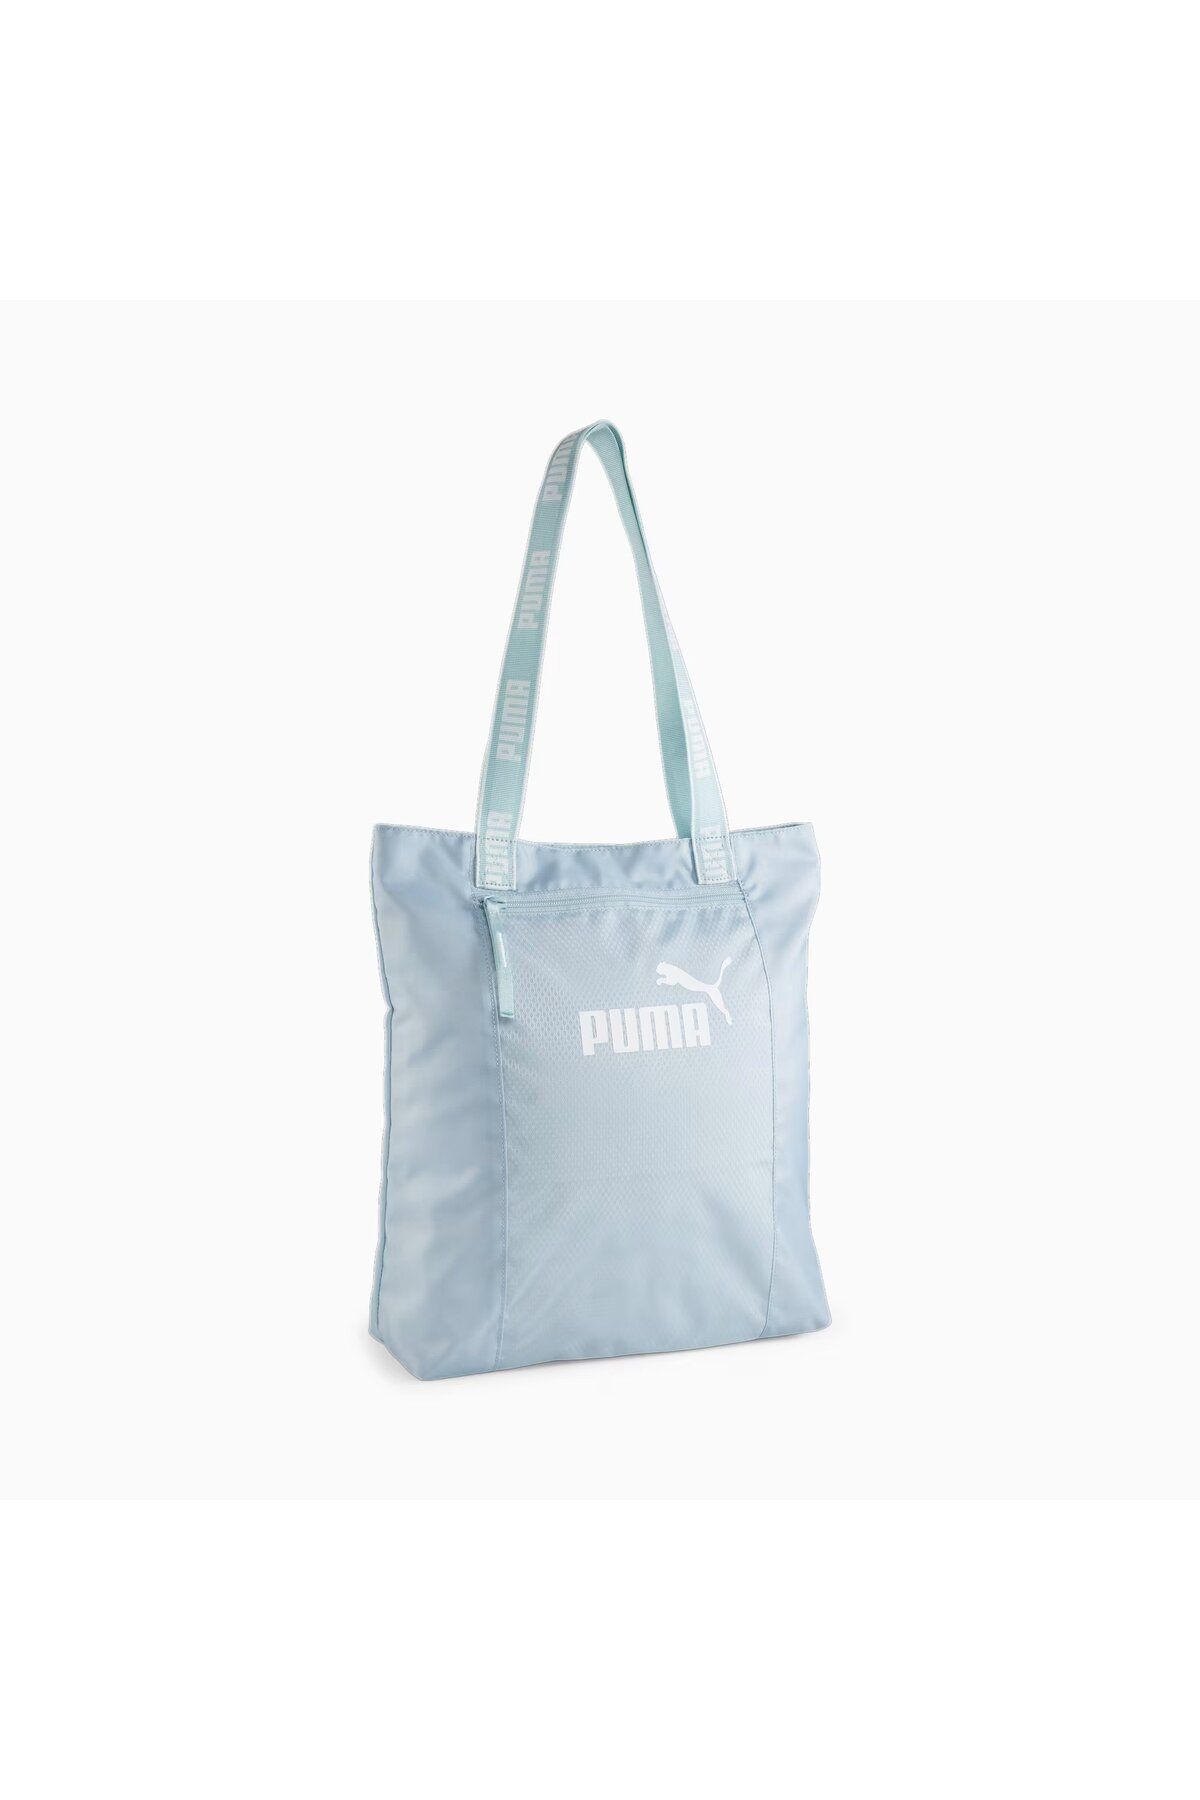 Puma Core Base Shopper Mavi Kadın Omuz Çantası